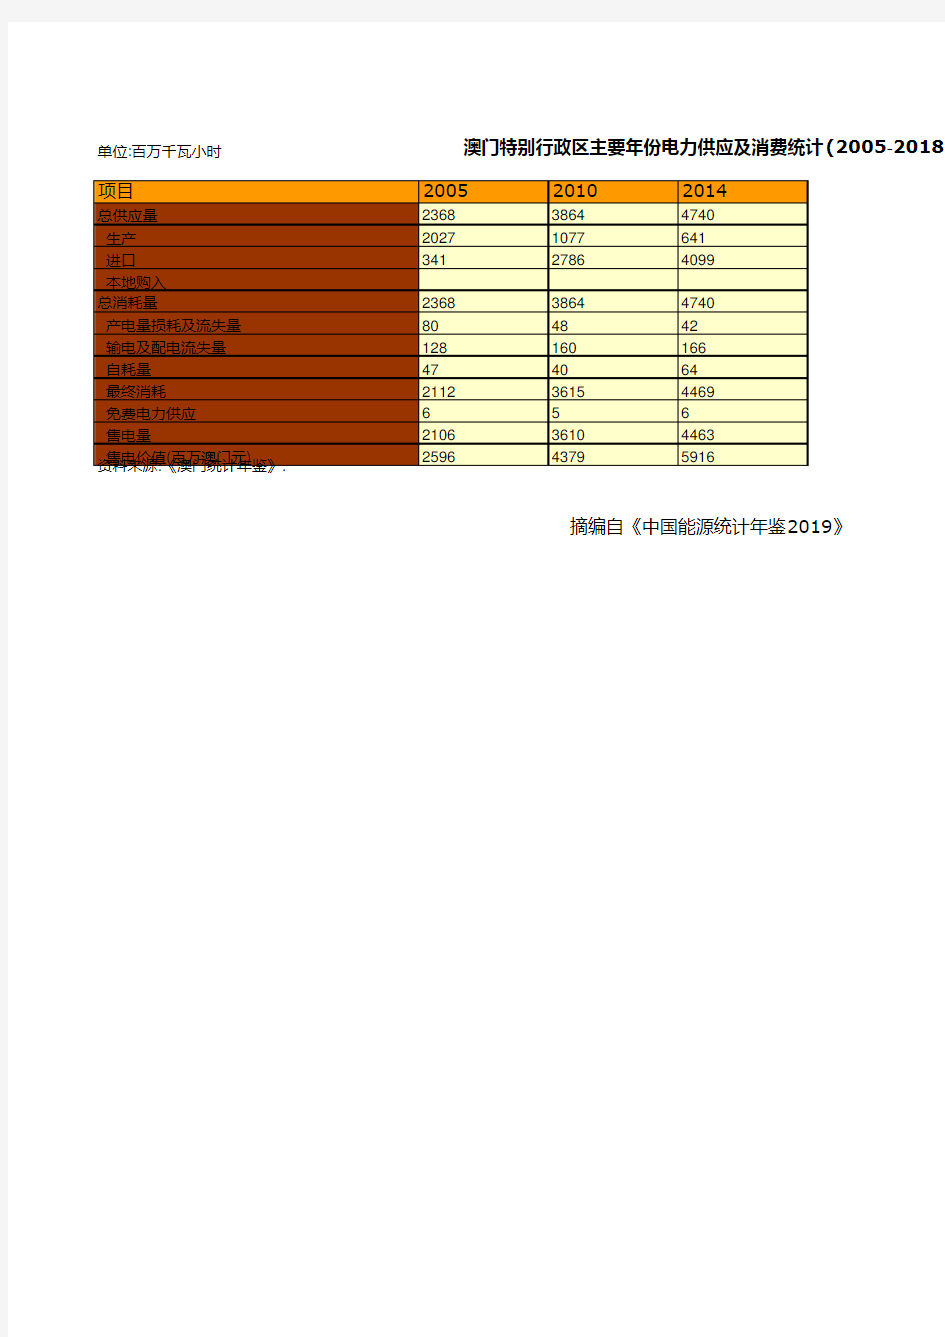 中国能源统计年鉴2019：澳门特别行政区主要年份电力供应及消费统计(2005-2018)